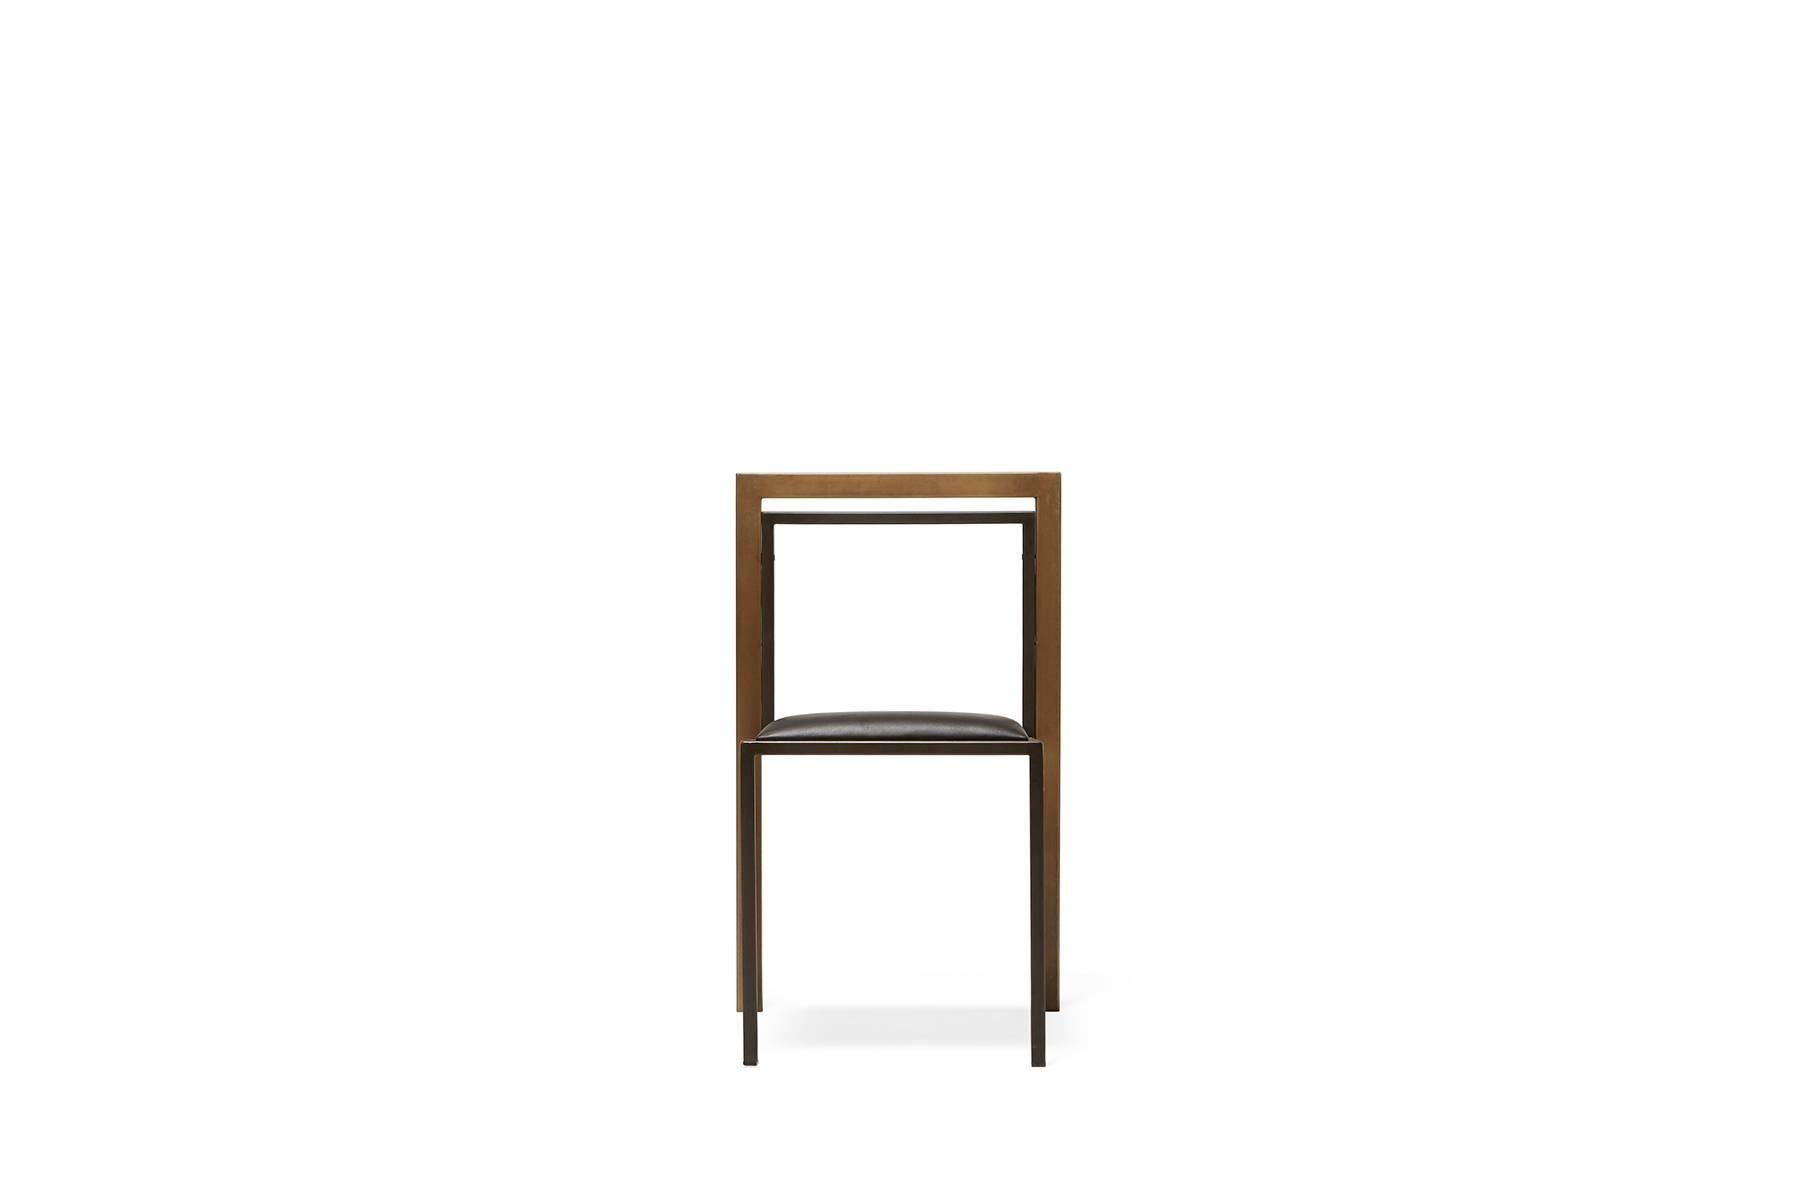 Une chaise en acier et en cuir avec une assise confortable, facilement empilable pour gagner de la place en cas de besoin. Cette version est dotée d'un cadre en acier noirci, d'un dossier en laiton et d'un siège rembourré en cuir noir. Cette